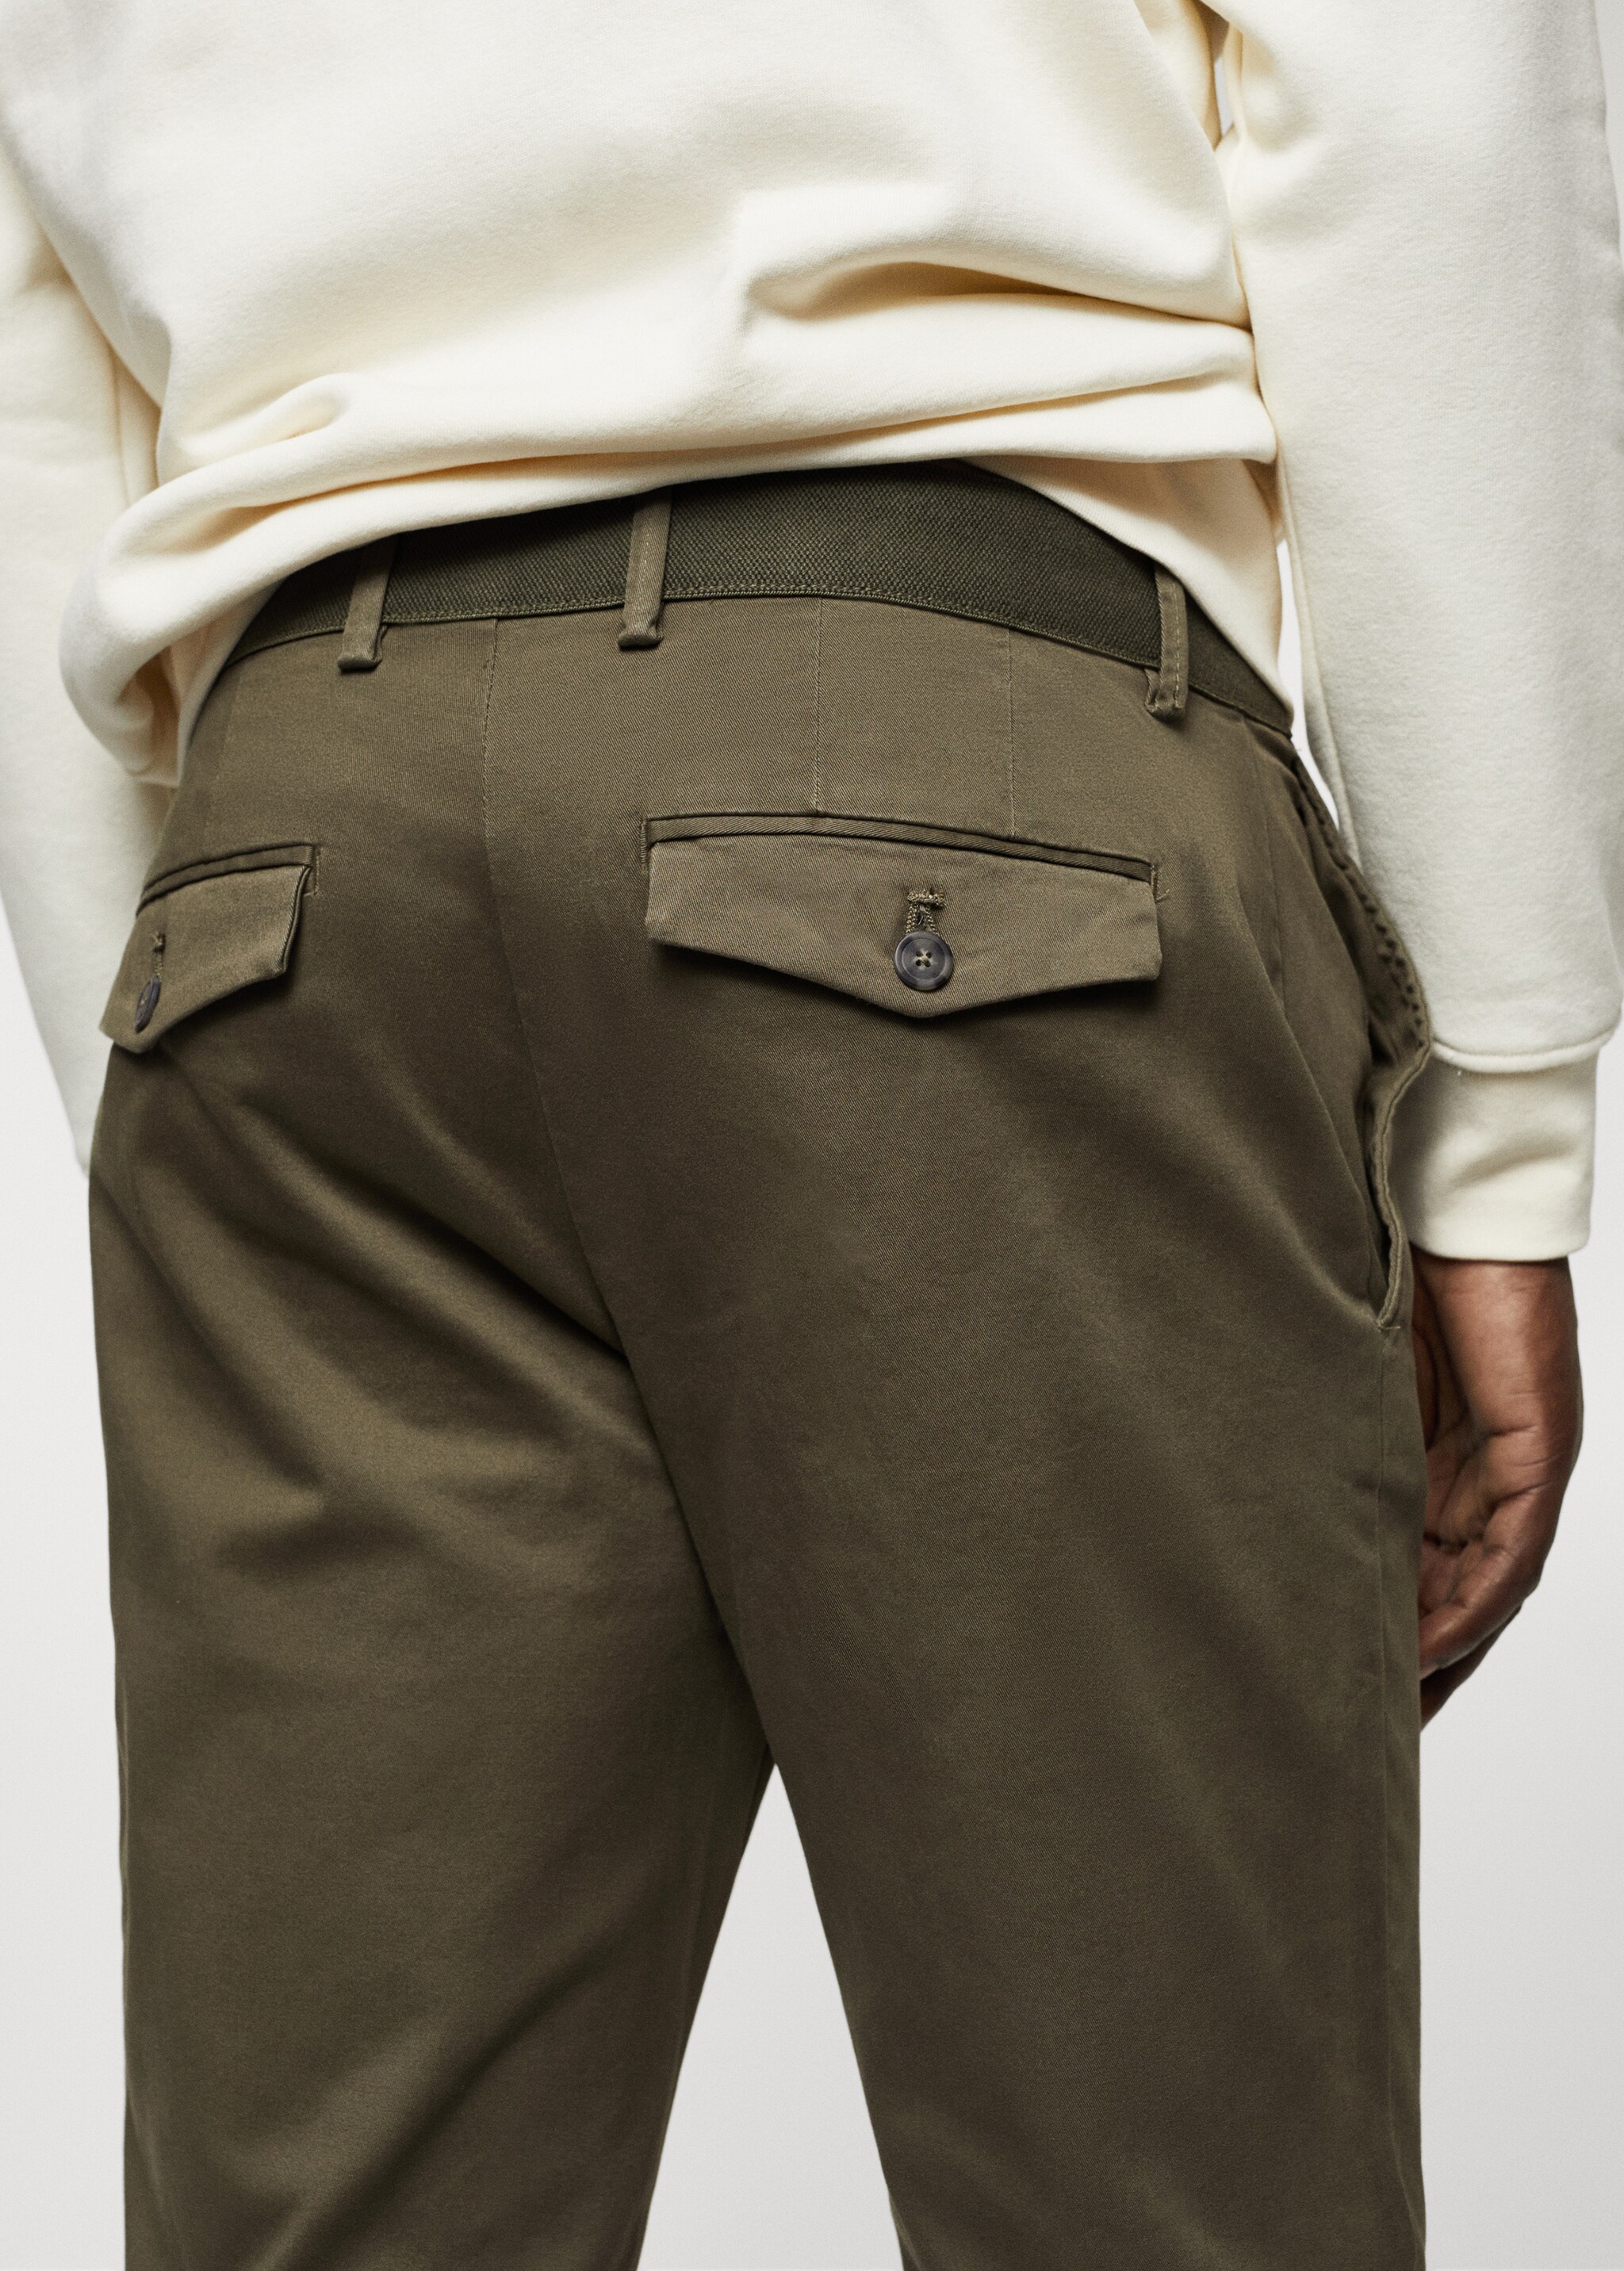 Tapered kesim pamuklu cropped pantolon - Ürün detayı 6